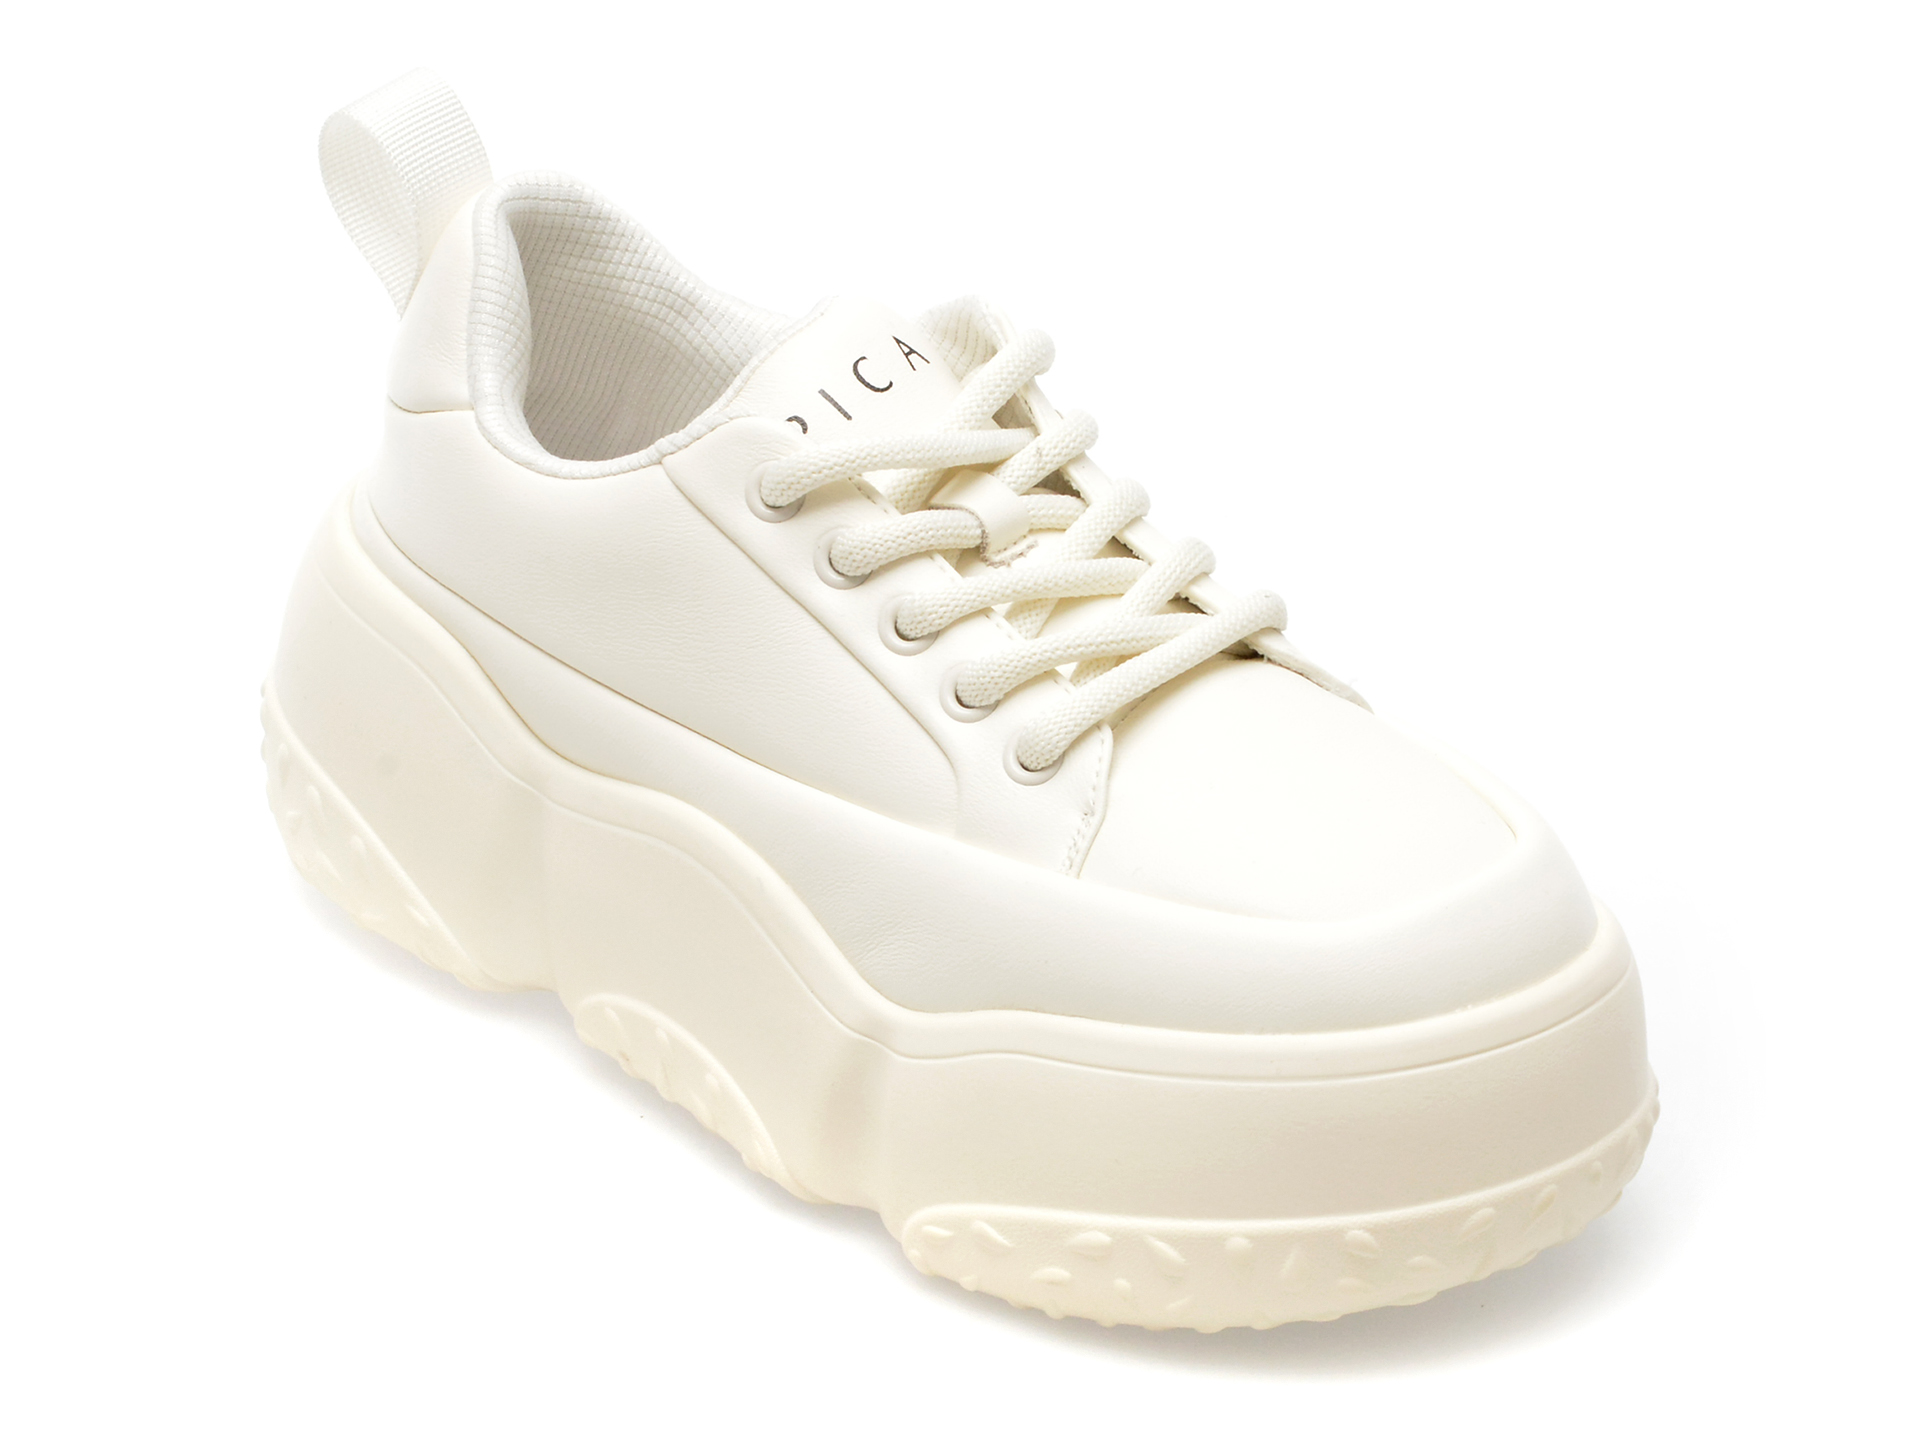 Pantofi EPICA albi, 889, din piele naturala femei 2023-09-21